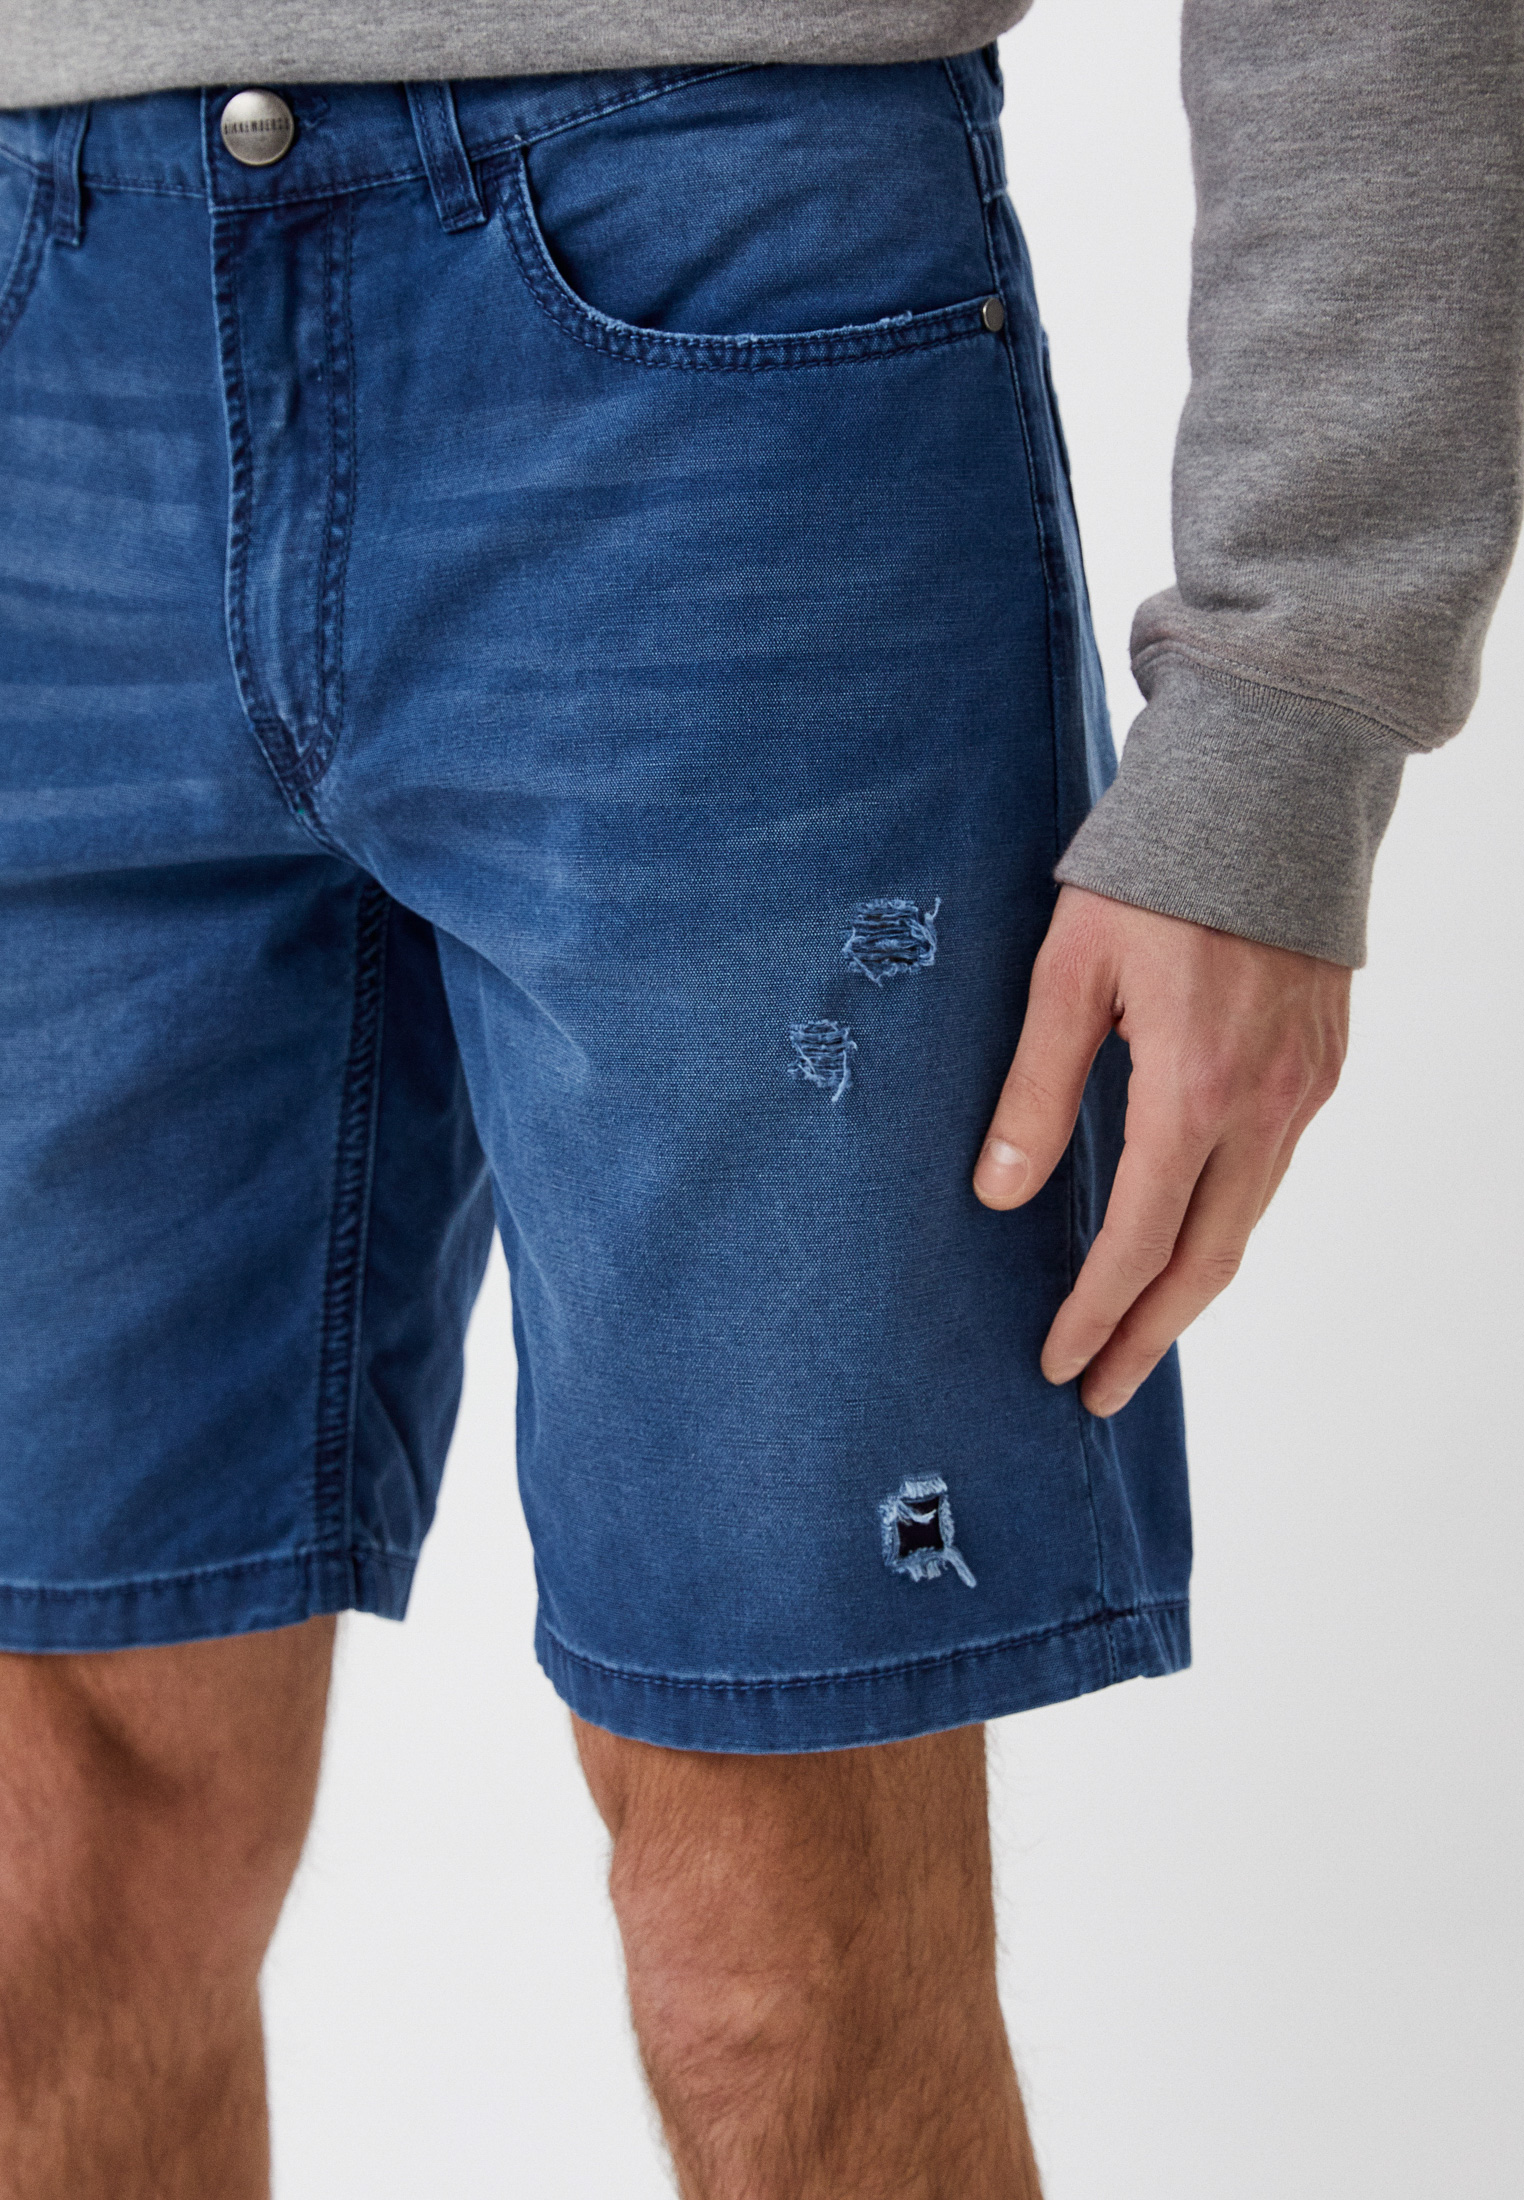 Мужские джинсовые шорты Bikkembergs (Биккембергс) C O 102 00 T 9492: изображение 4